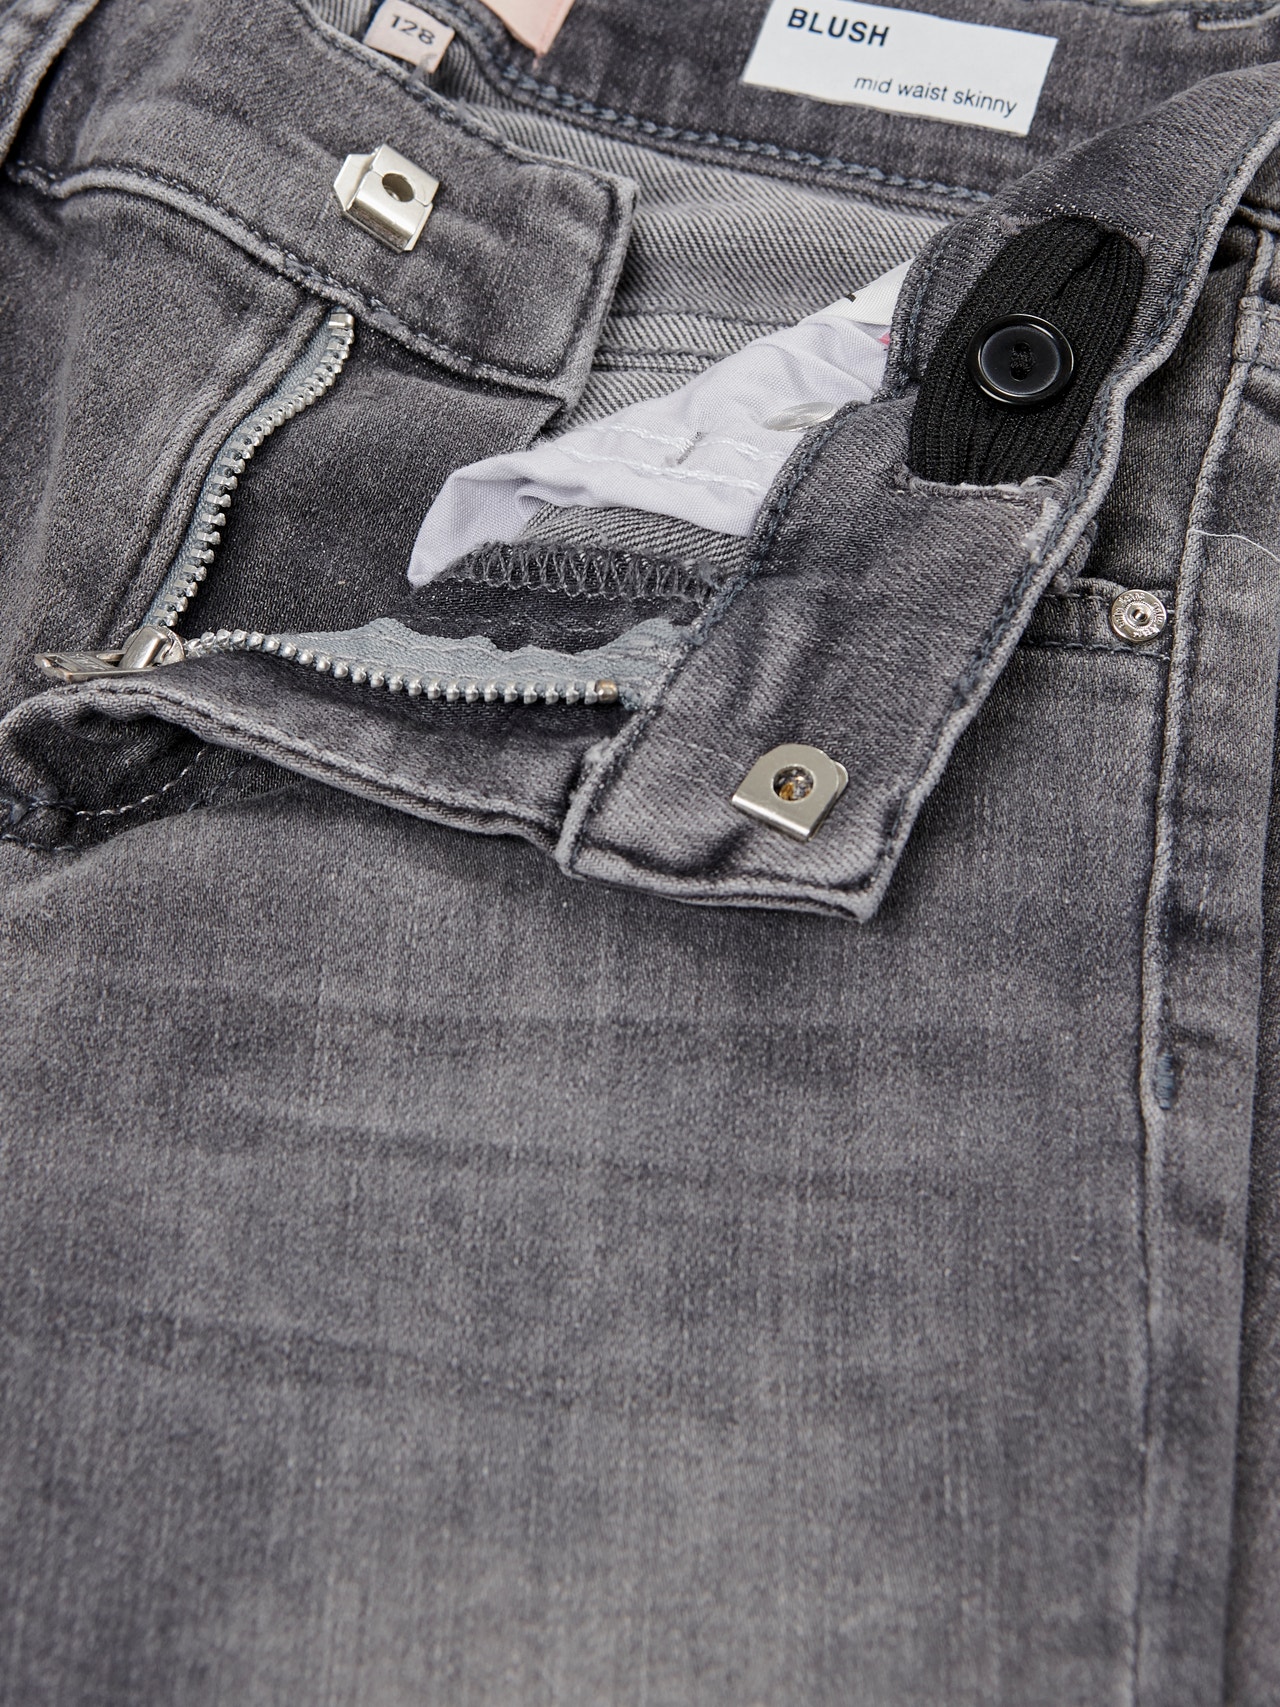 ONLY Skinny Fit Raw hems Jeans -Grey Denim - 15173843